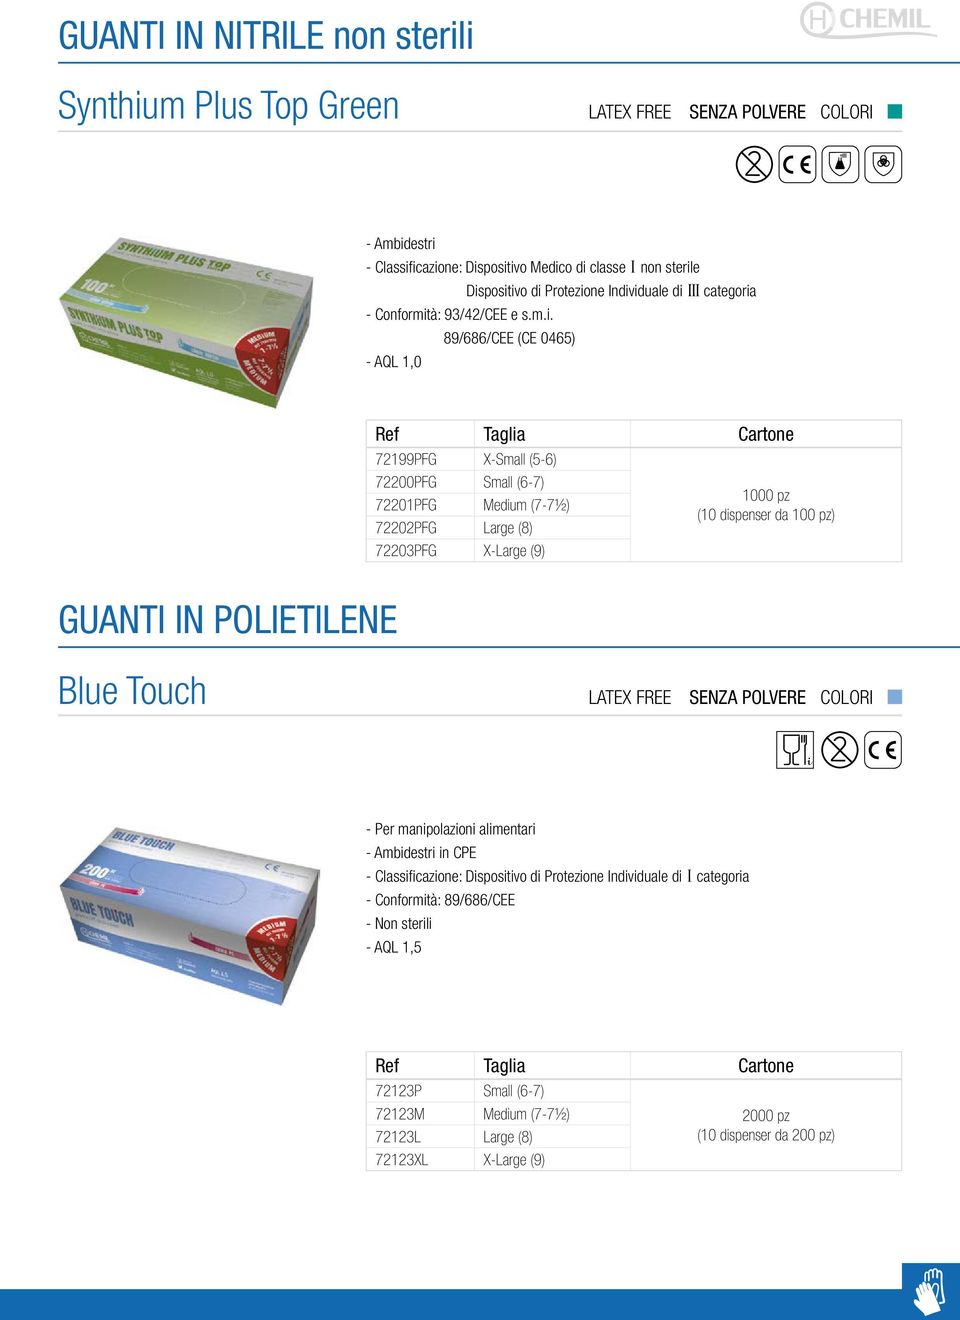 POLIETILENE Blue Touch LATEX FREE - Per manipolazioni alimentari in CPE - Classificazione: Dispositivo di Protezione Individuale di I categoria -